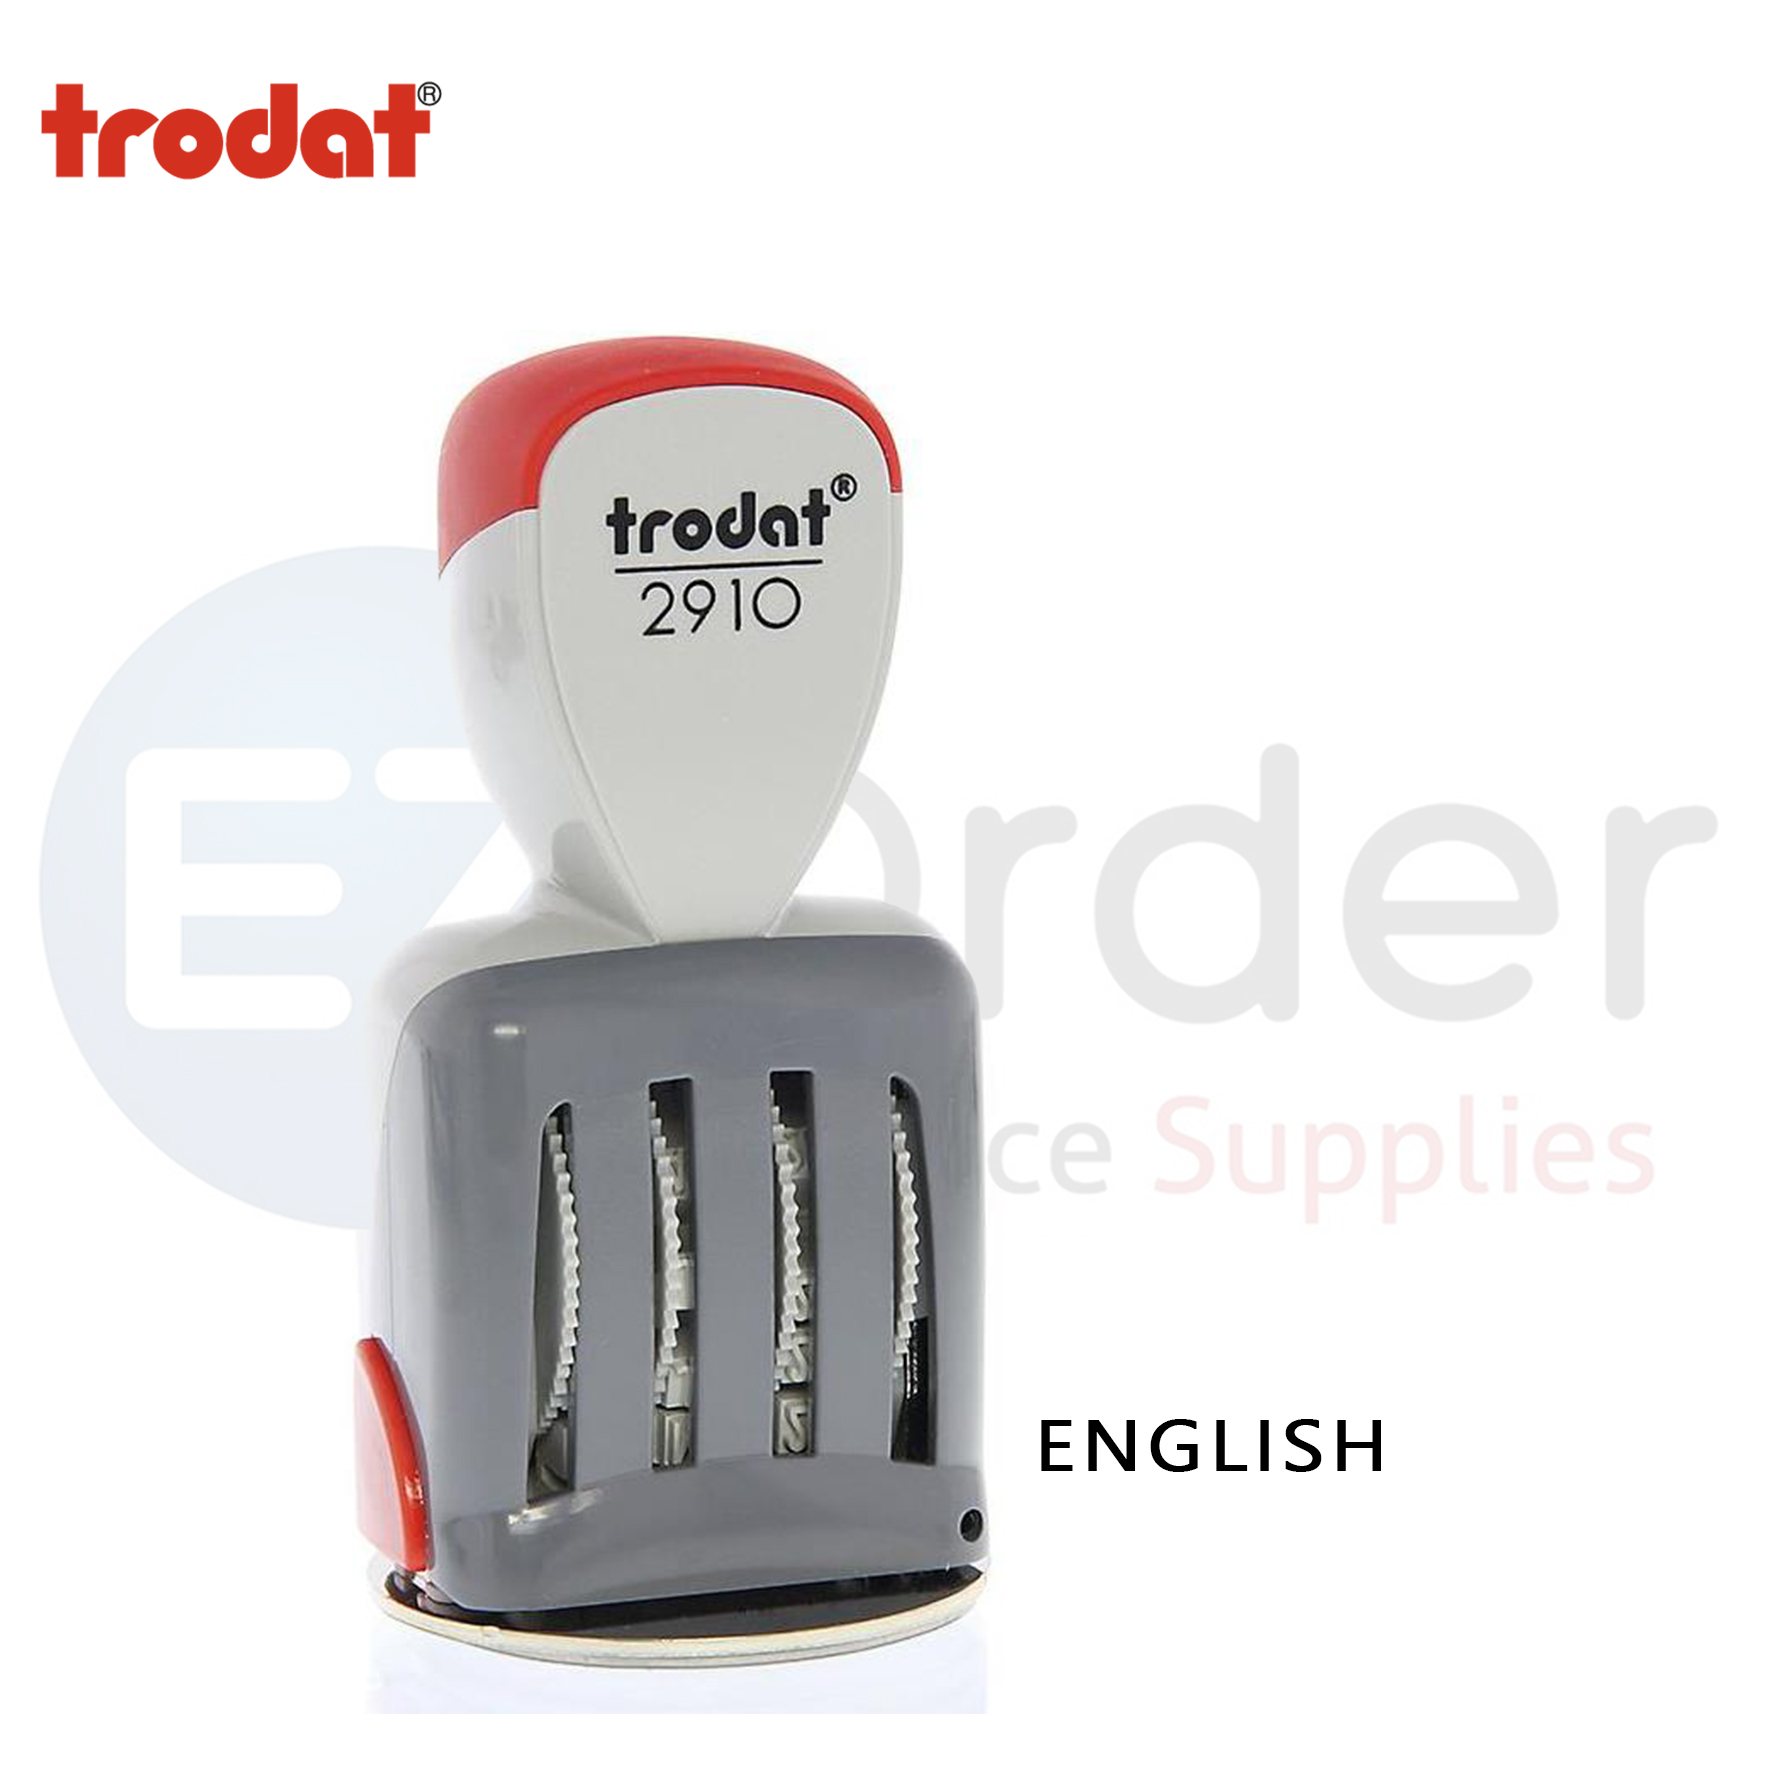 Trodat-2910 manual inking dater stamp, English